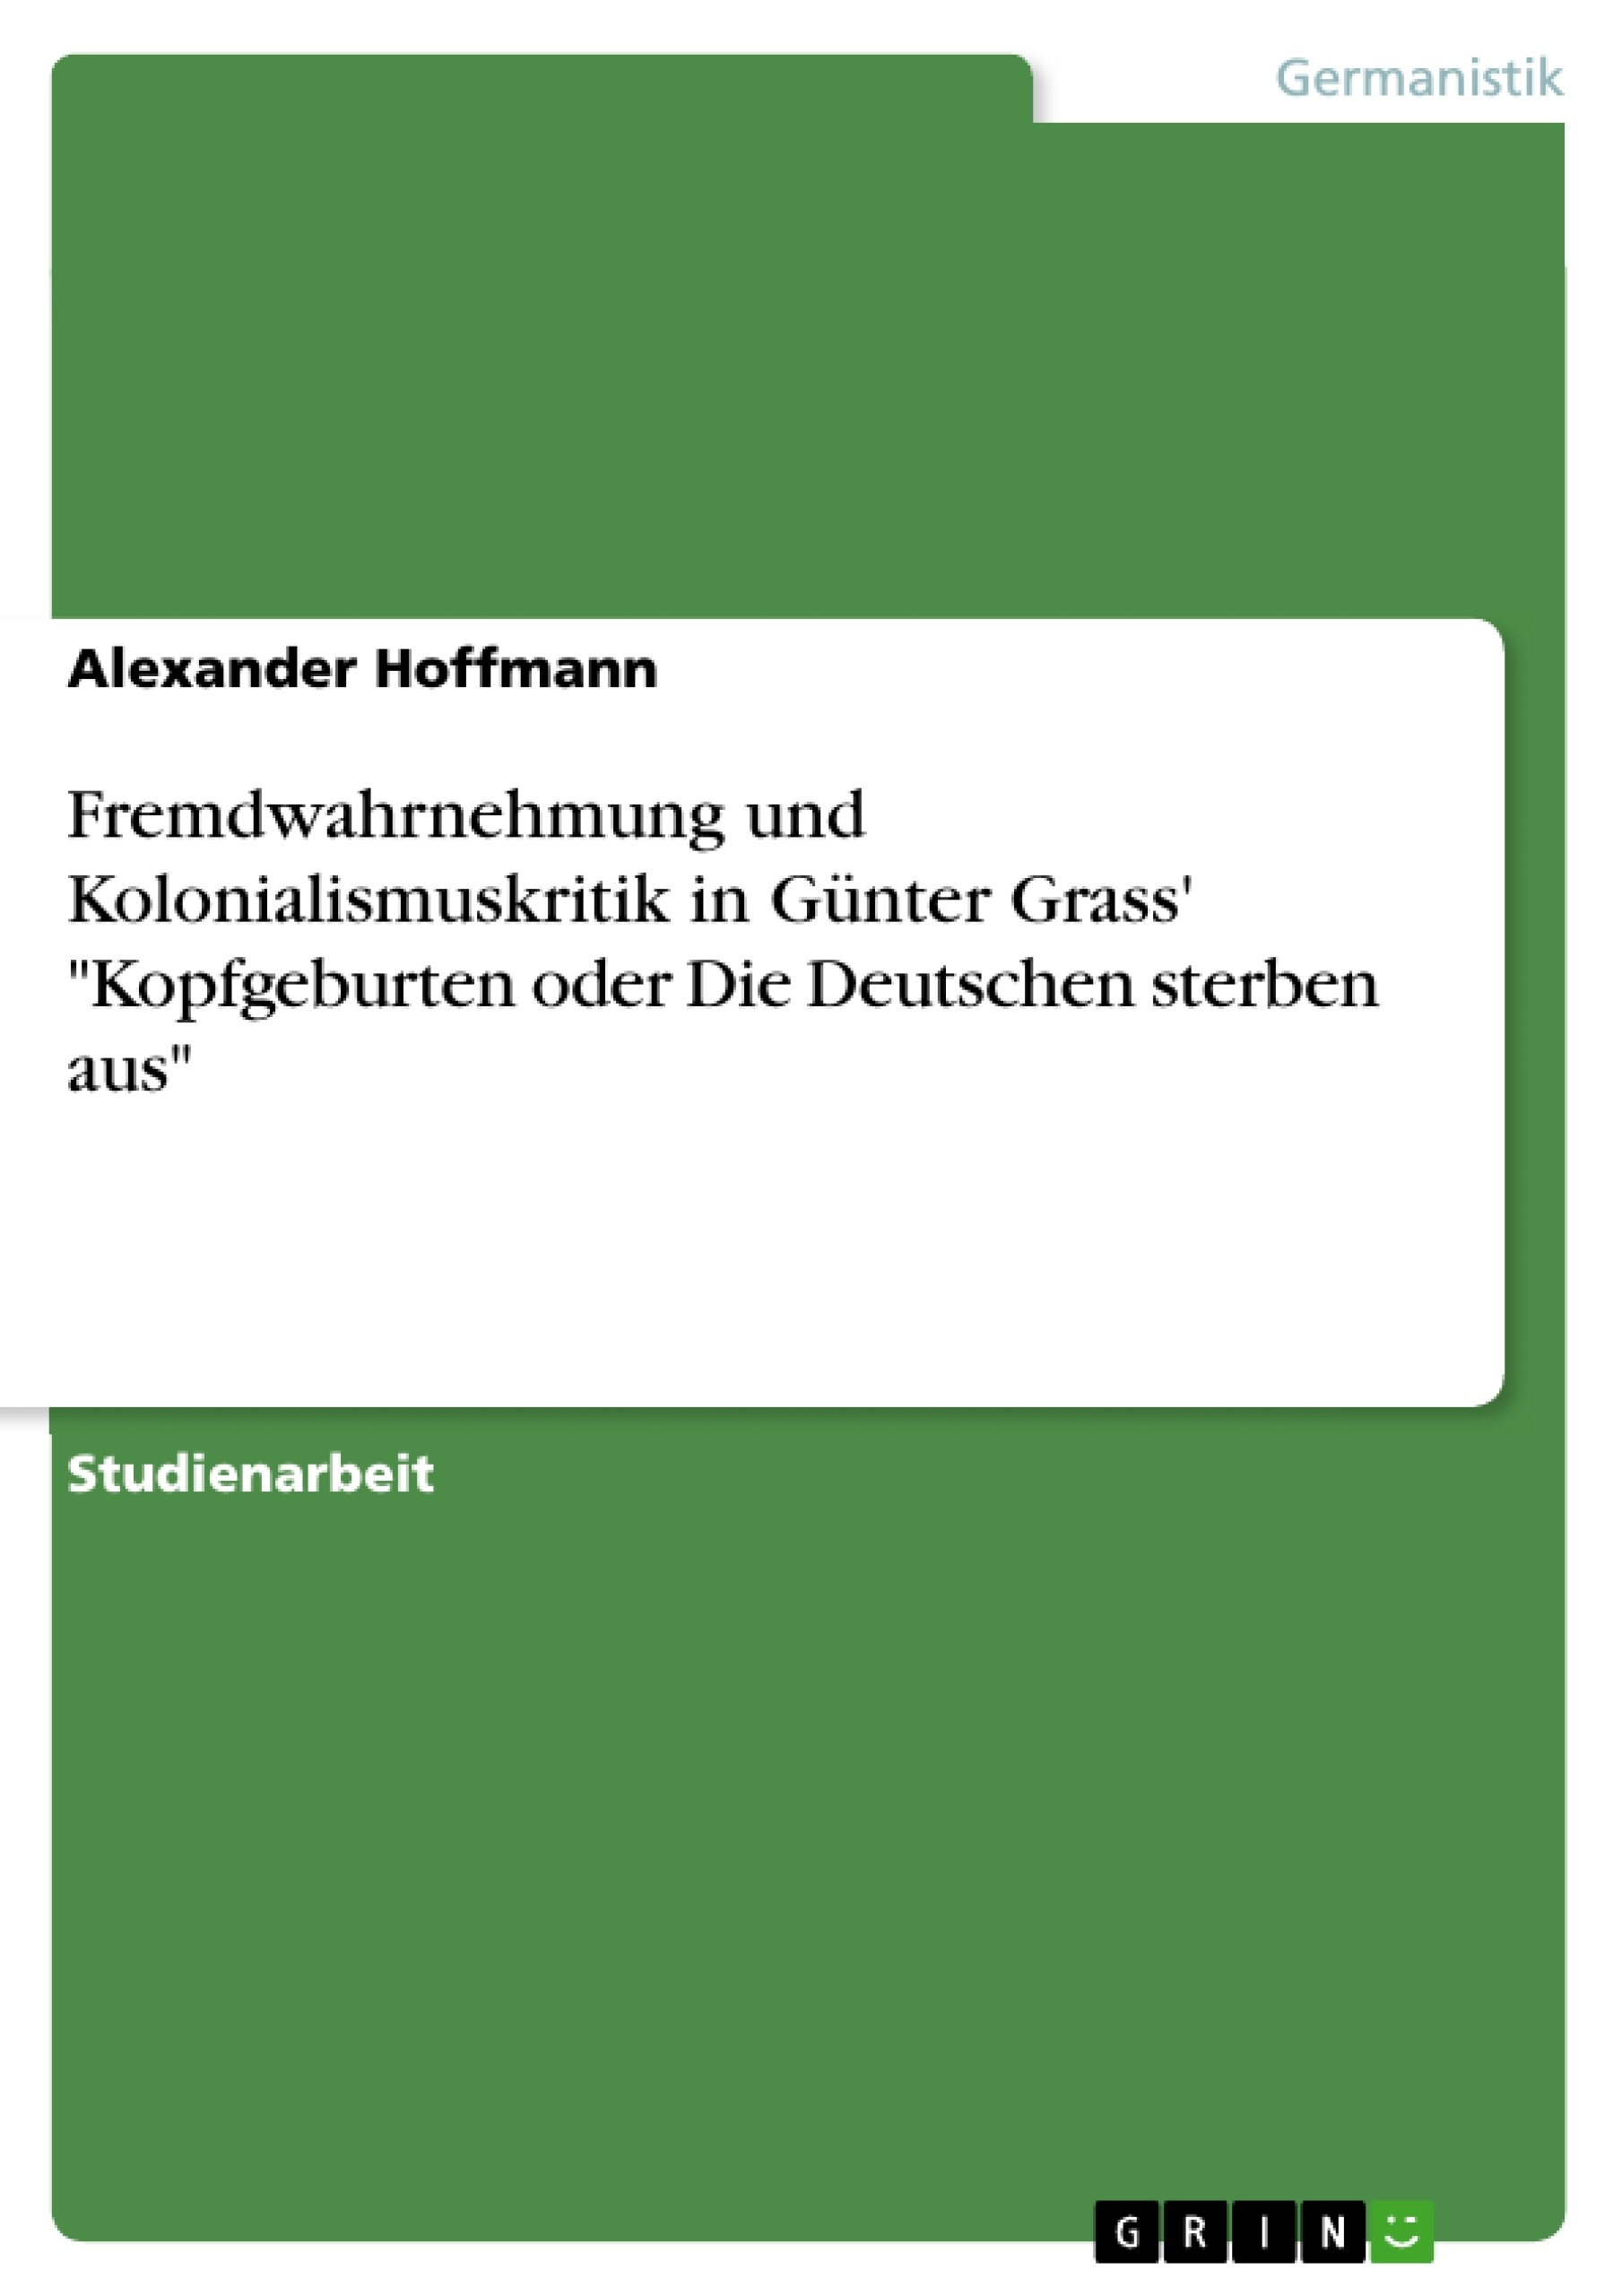 Titre: Fremdwahrnehmung und Kolonialismuskritik in Günter Grass' "Kopfgeburten oder Die Deutschen sterben aus"